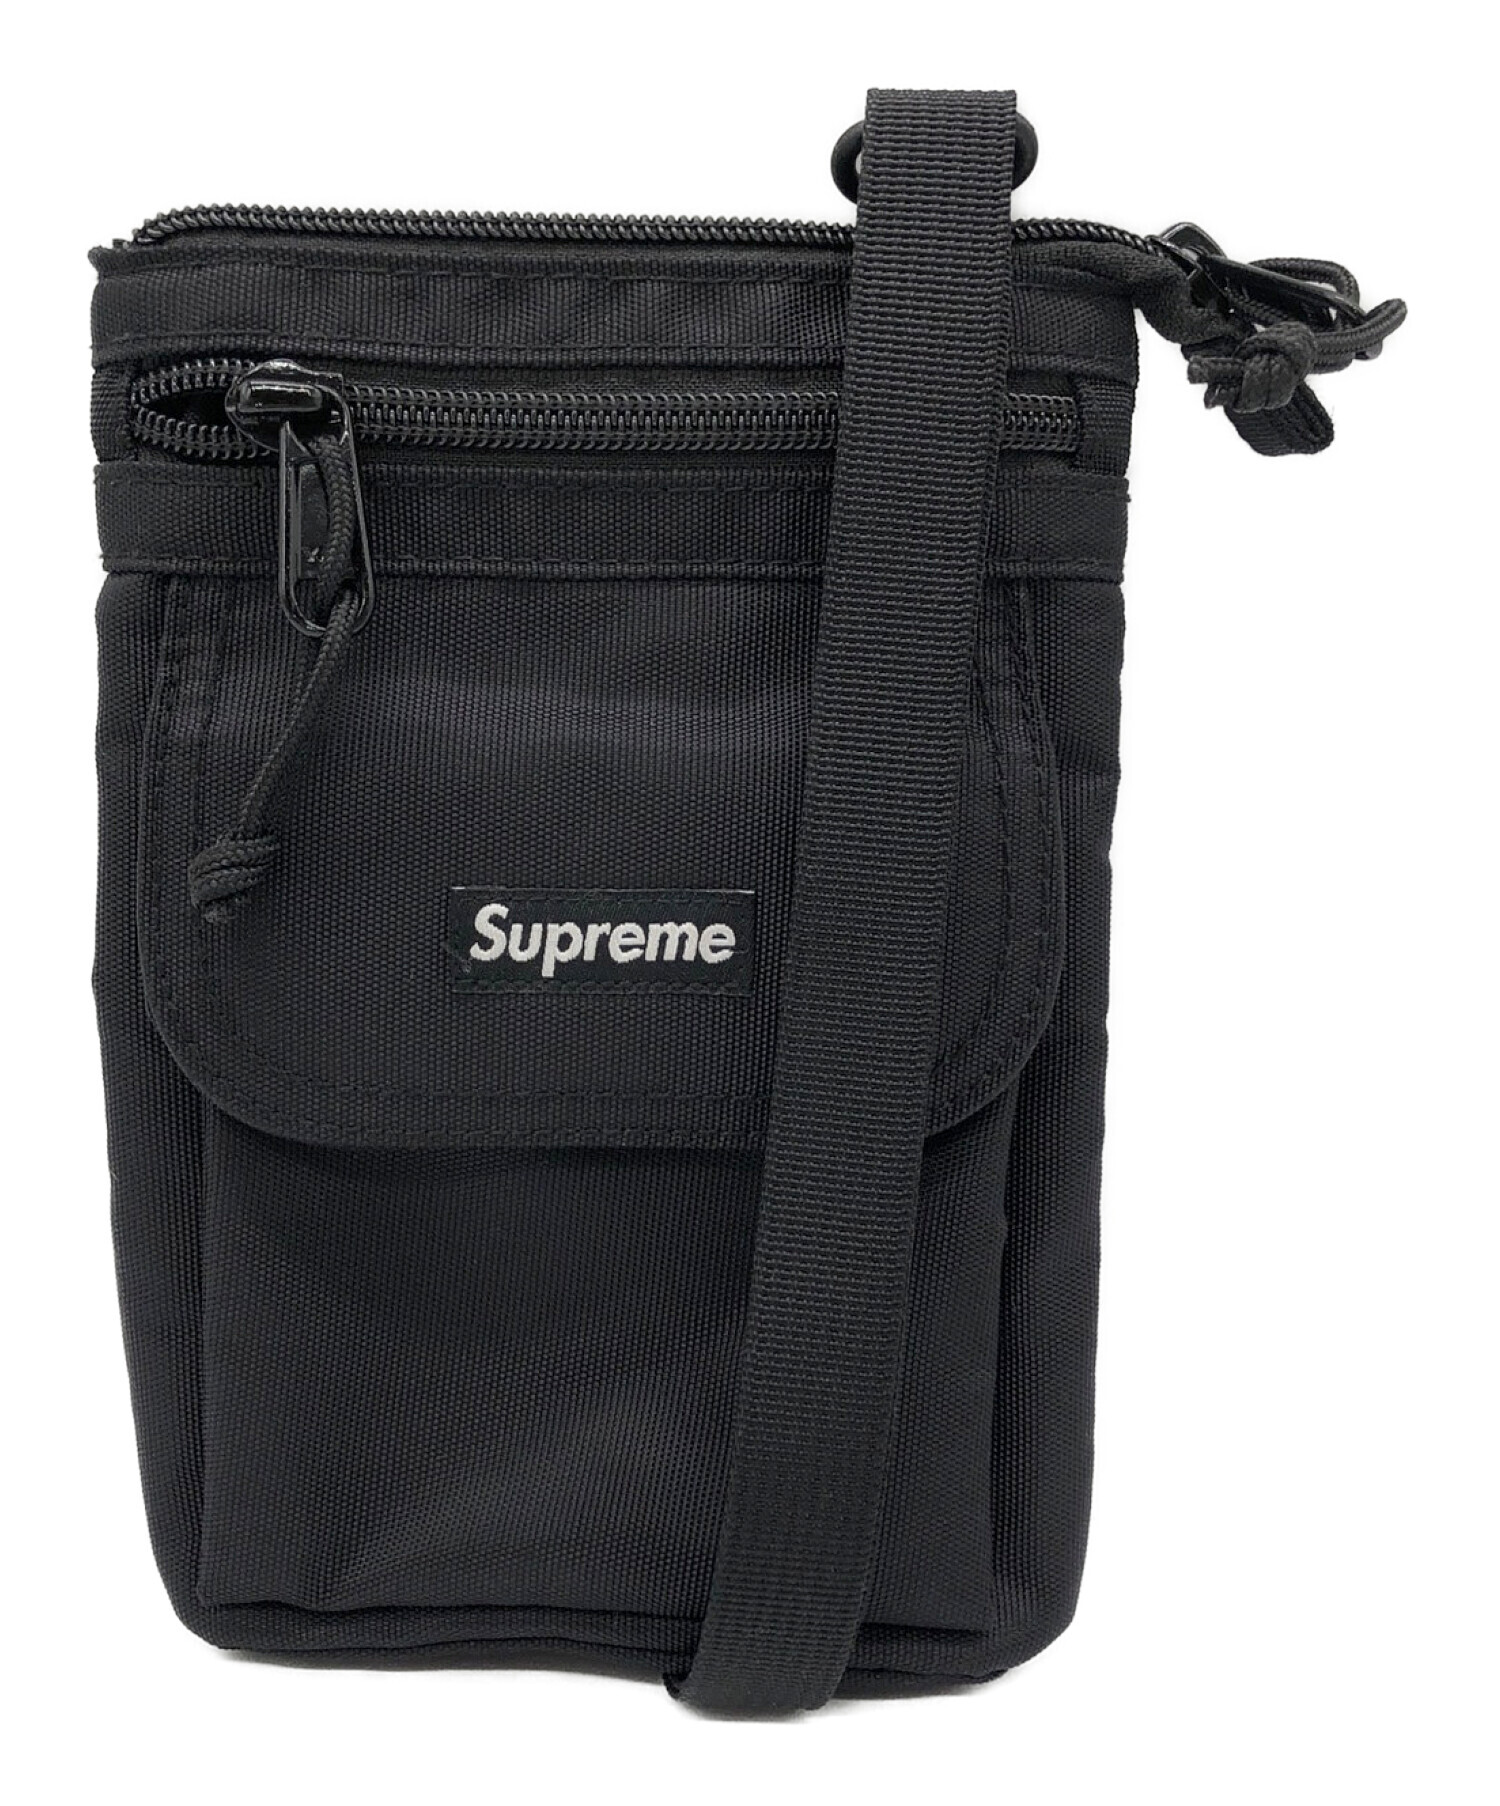 Supreme (シュプリーム) 19FW Shoulder Bag ブラック